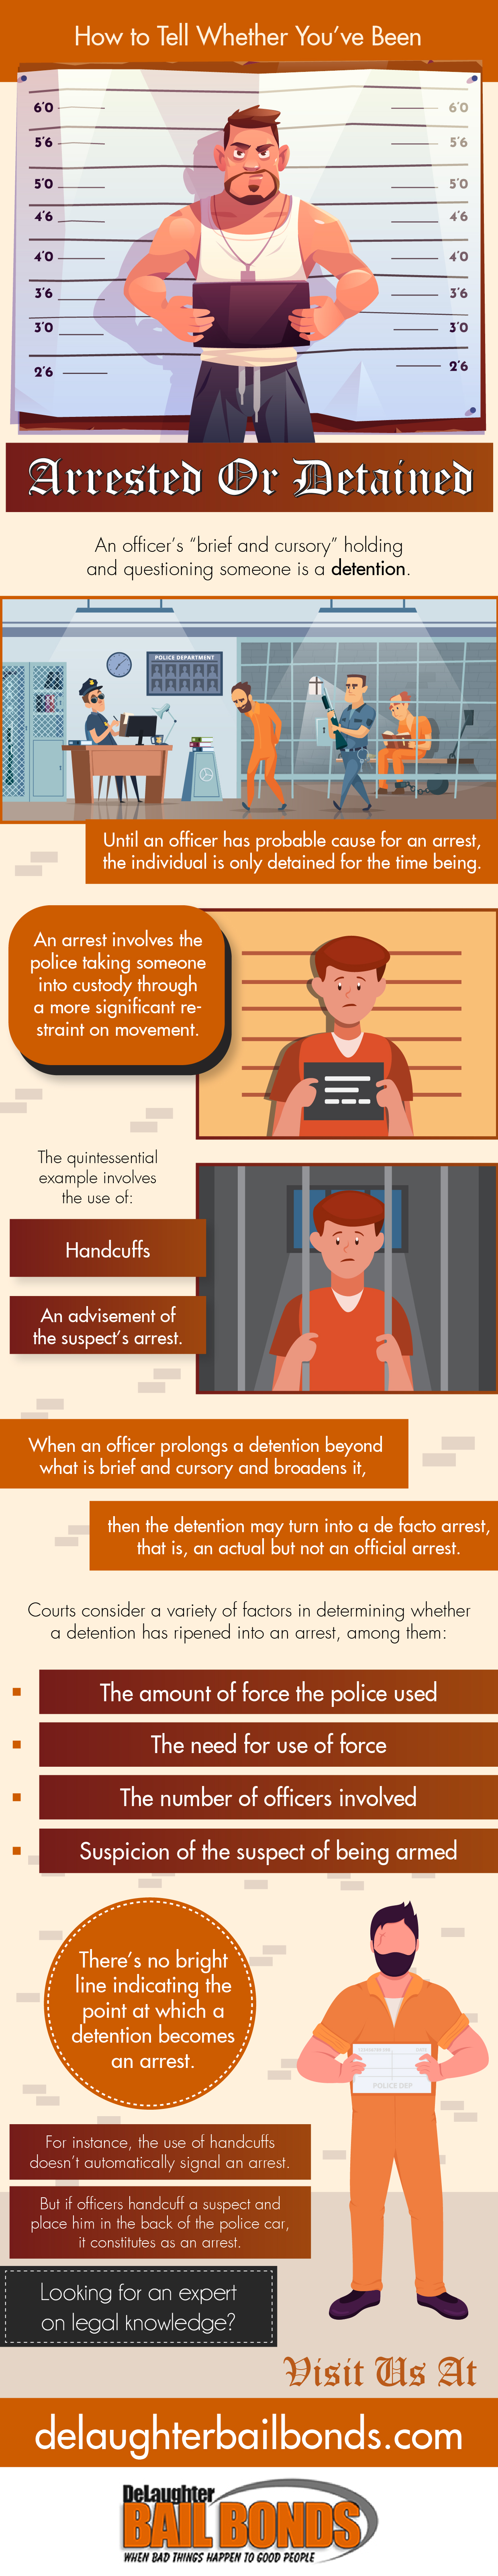 arrest or detain